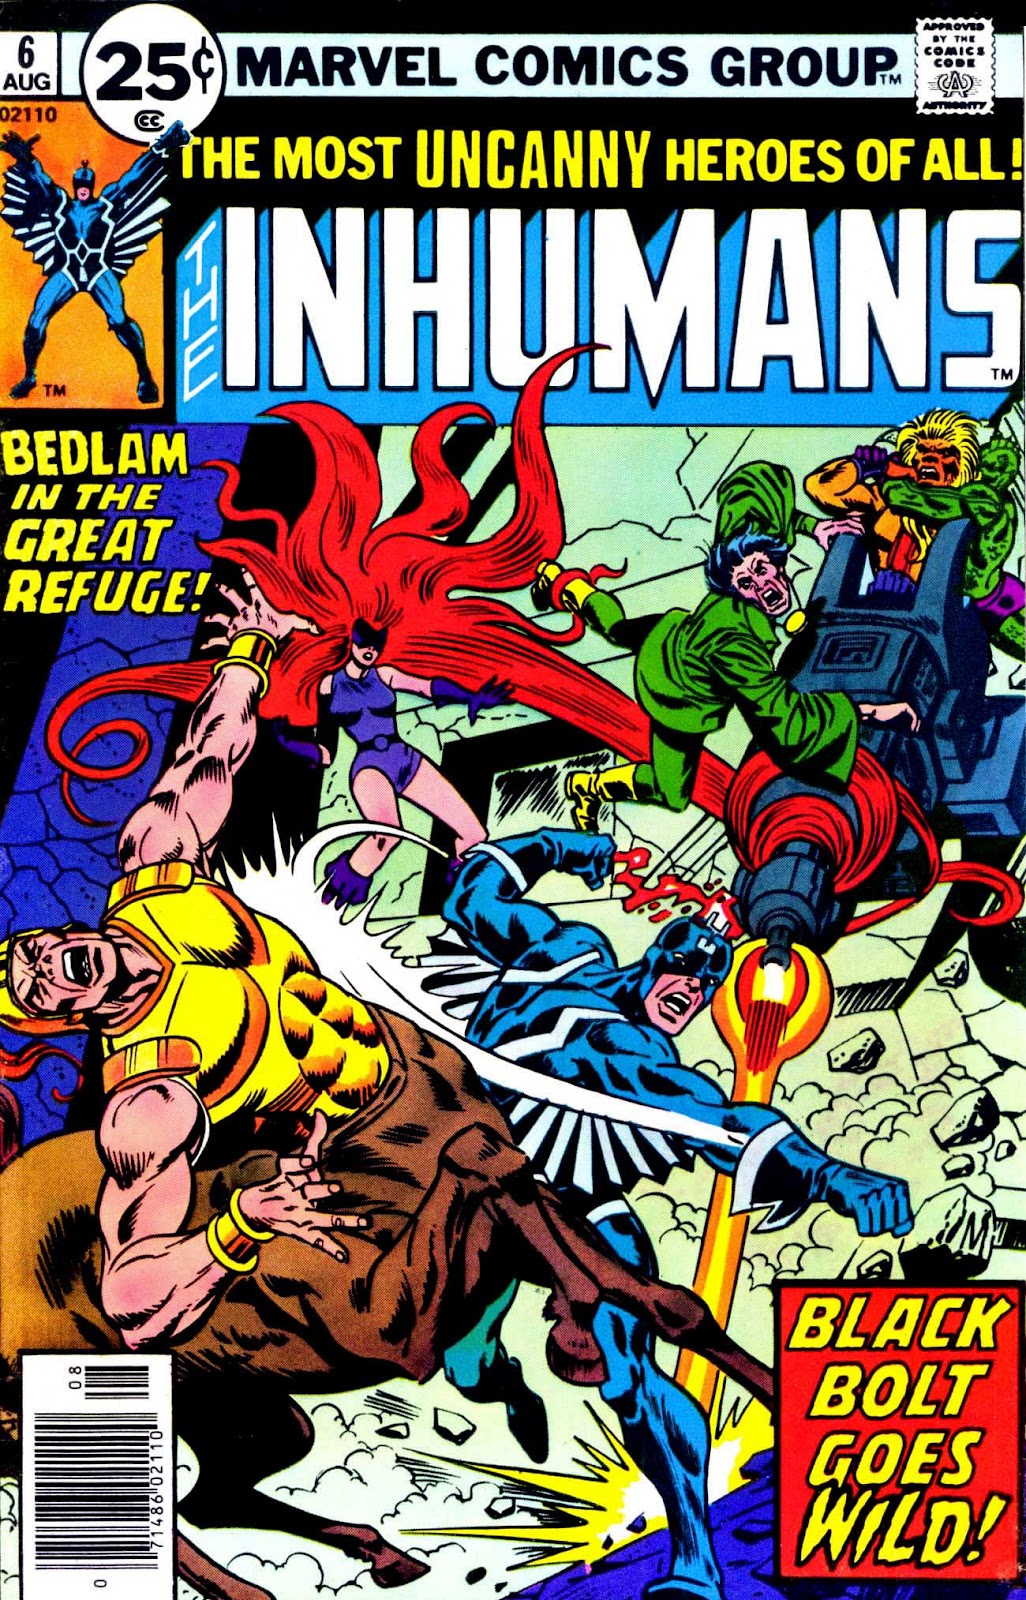 Inhumans (1975) 6 Page 1